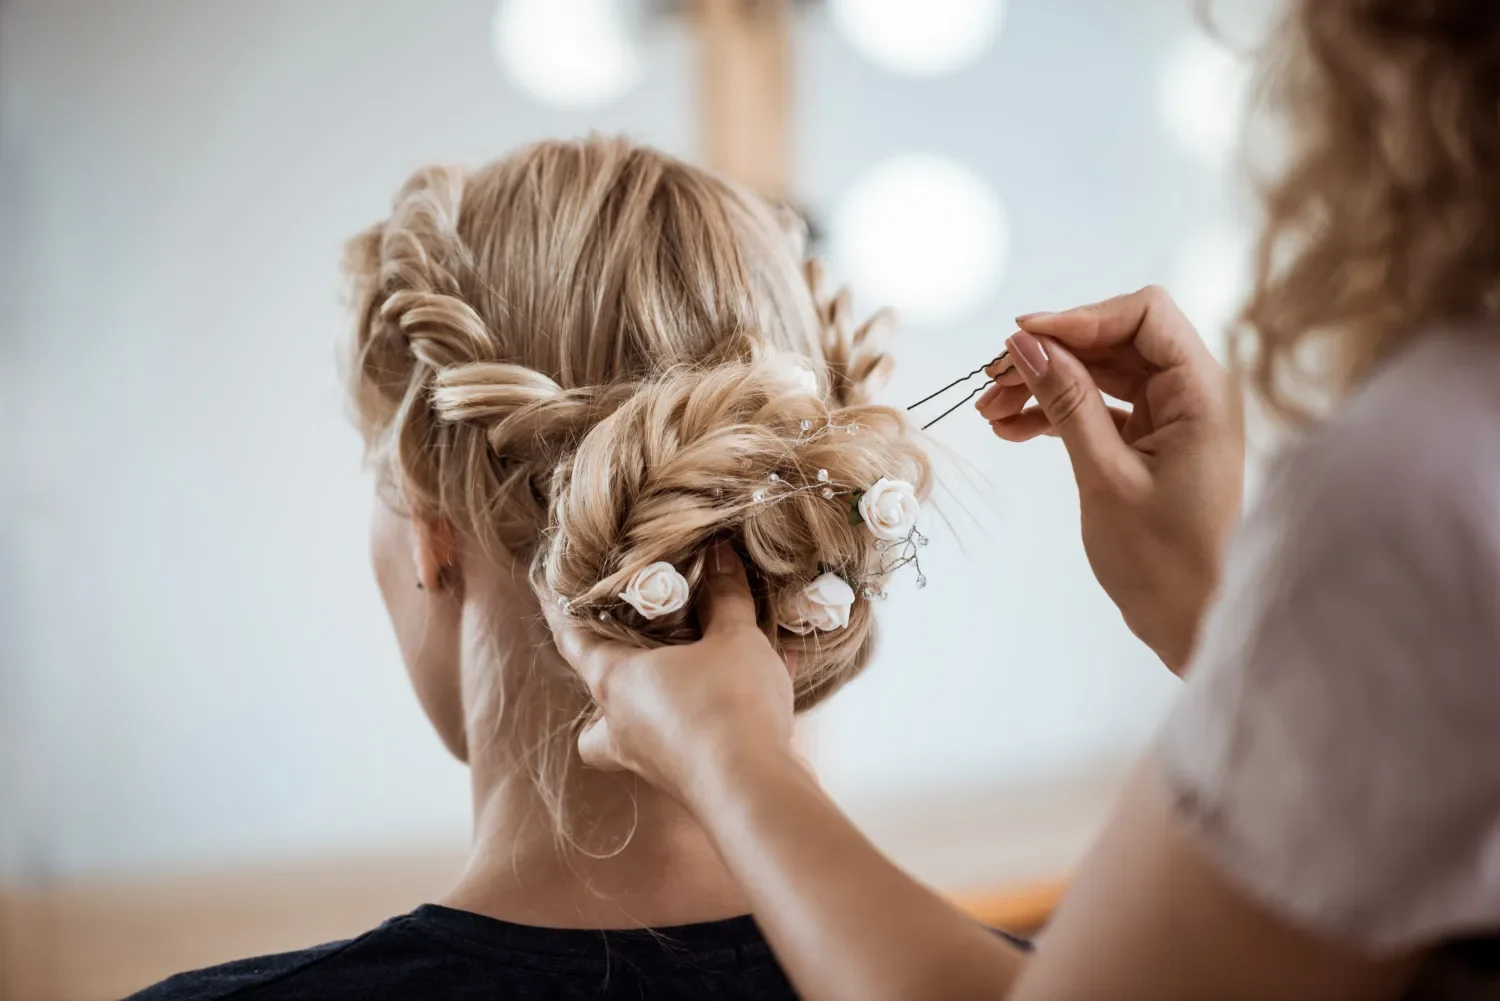 femme blonde de dos se faisant coiffer pour mariage combloux